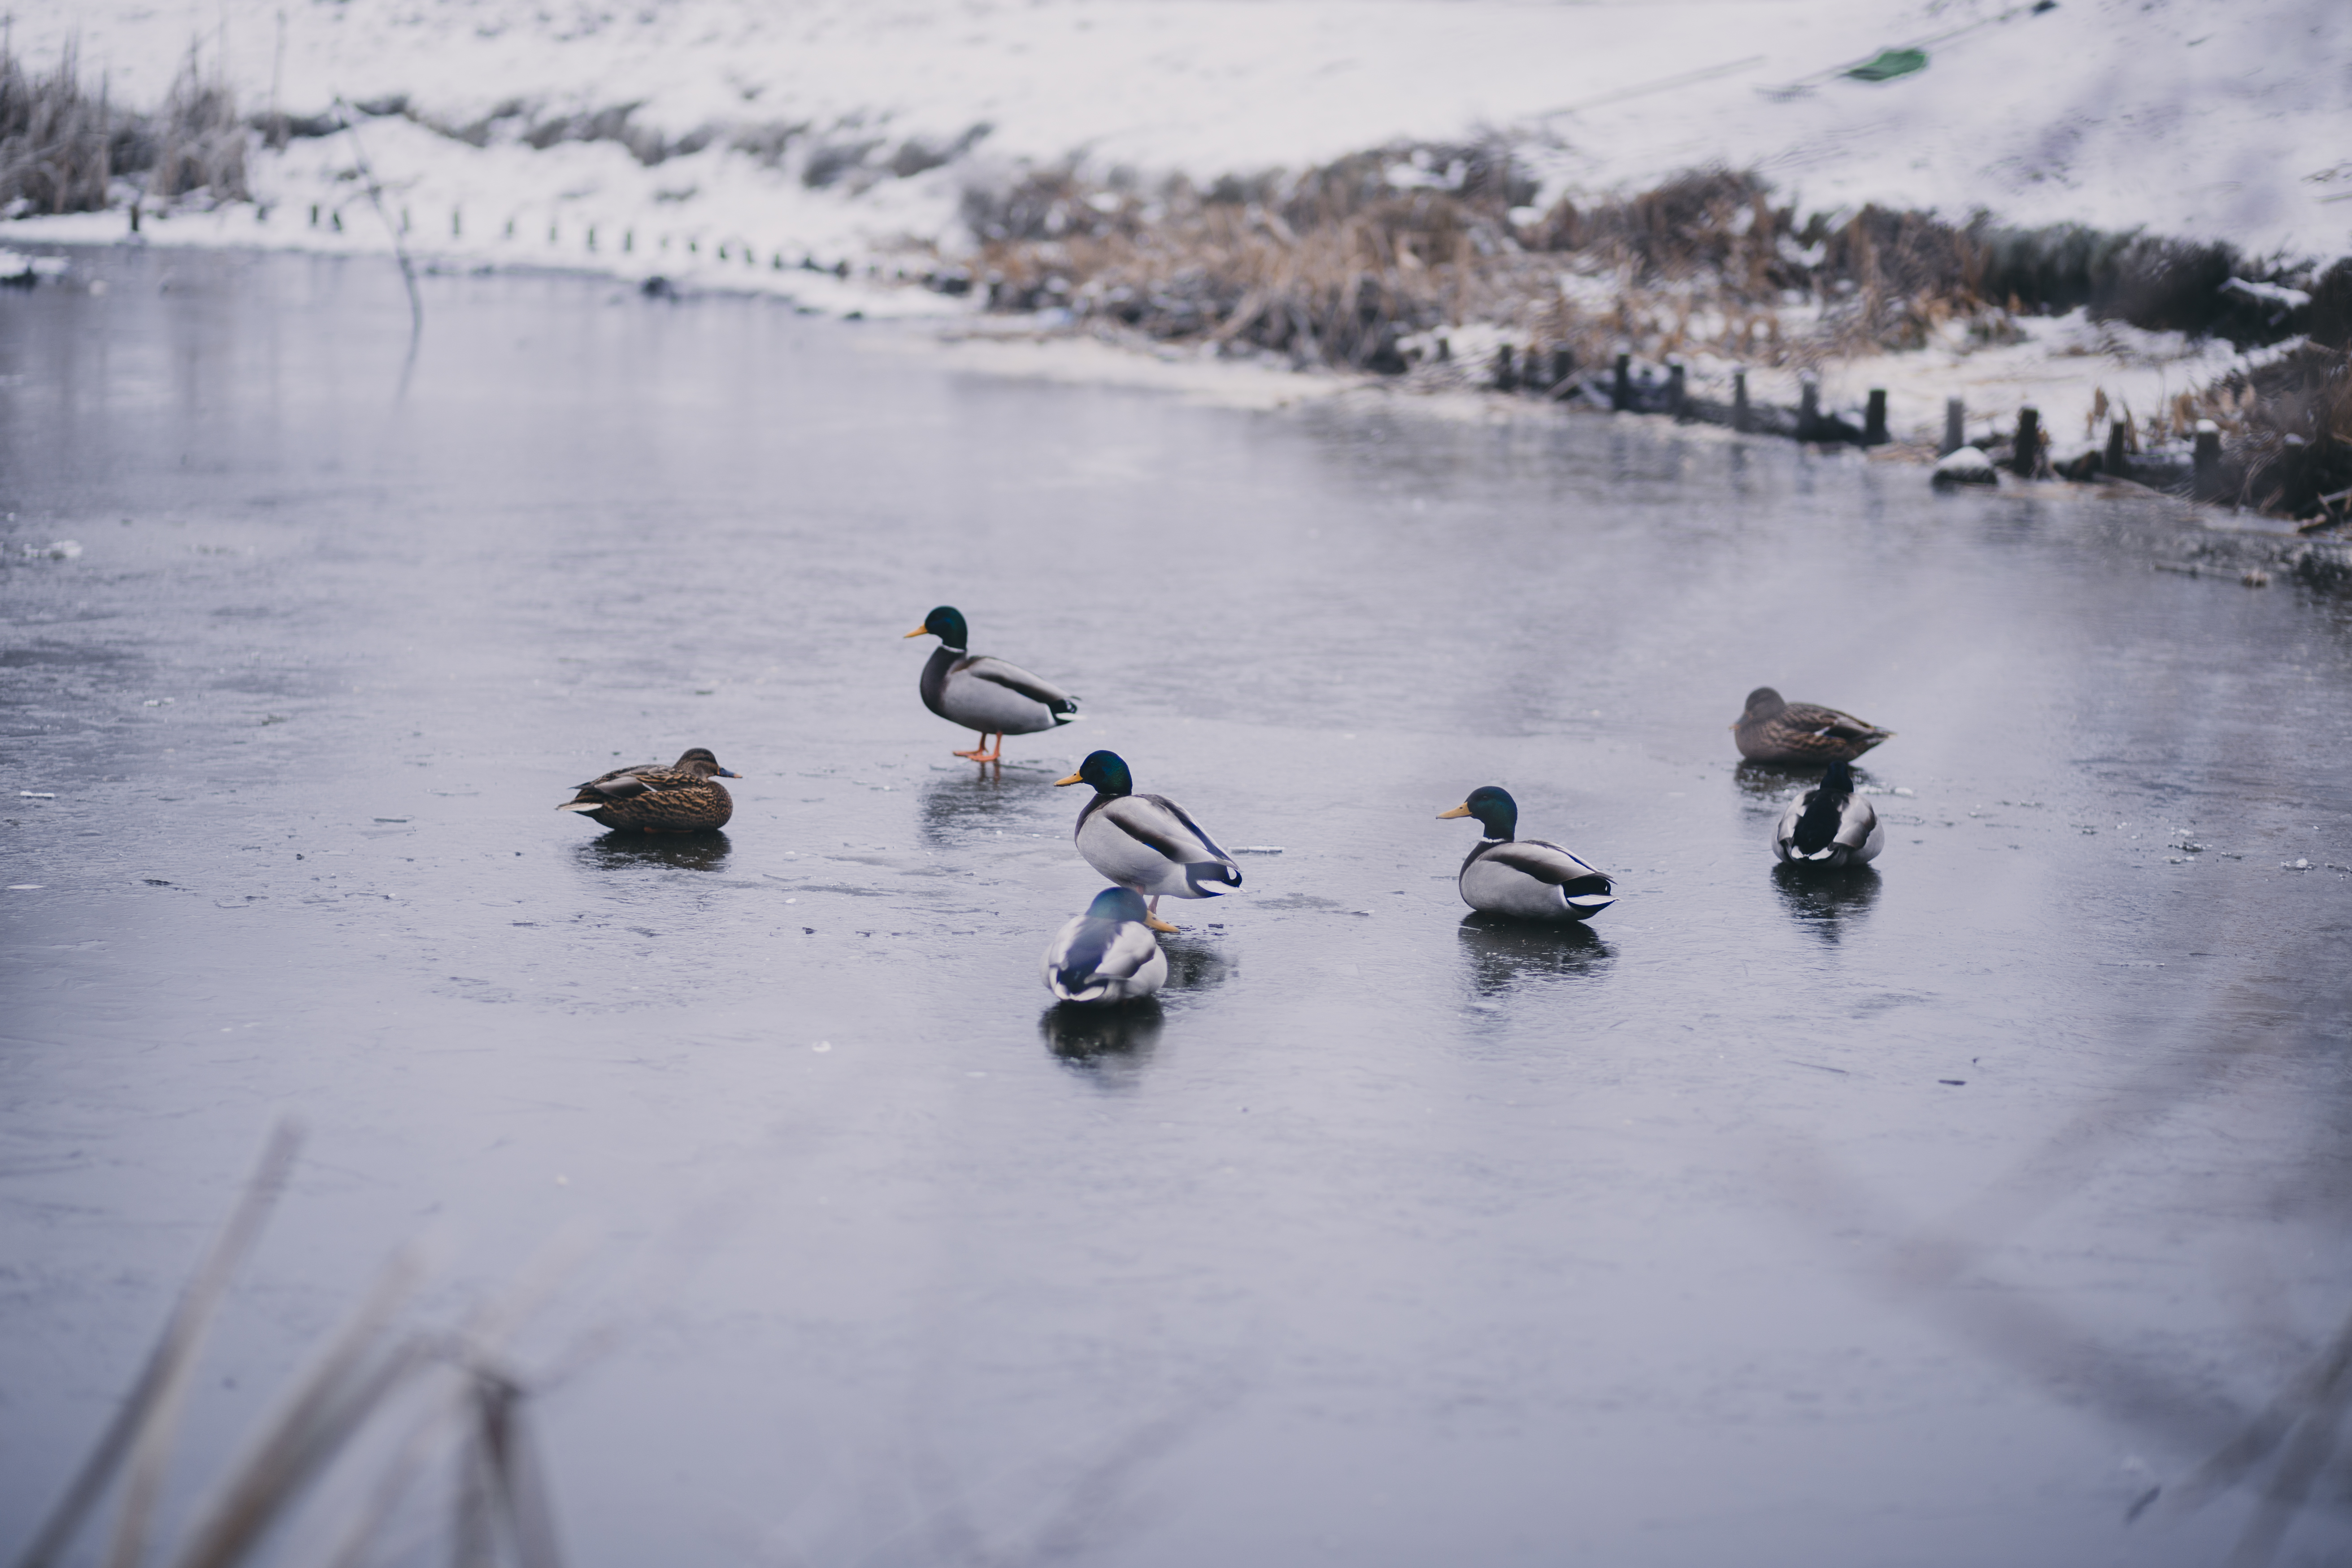 Wild ducks at a frozen pond - freestocks.org - Free stock photo